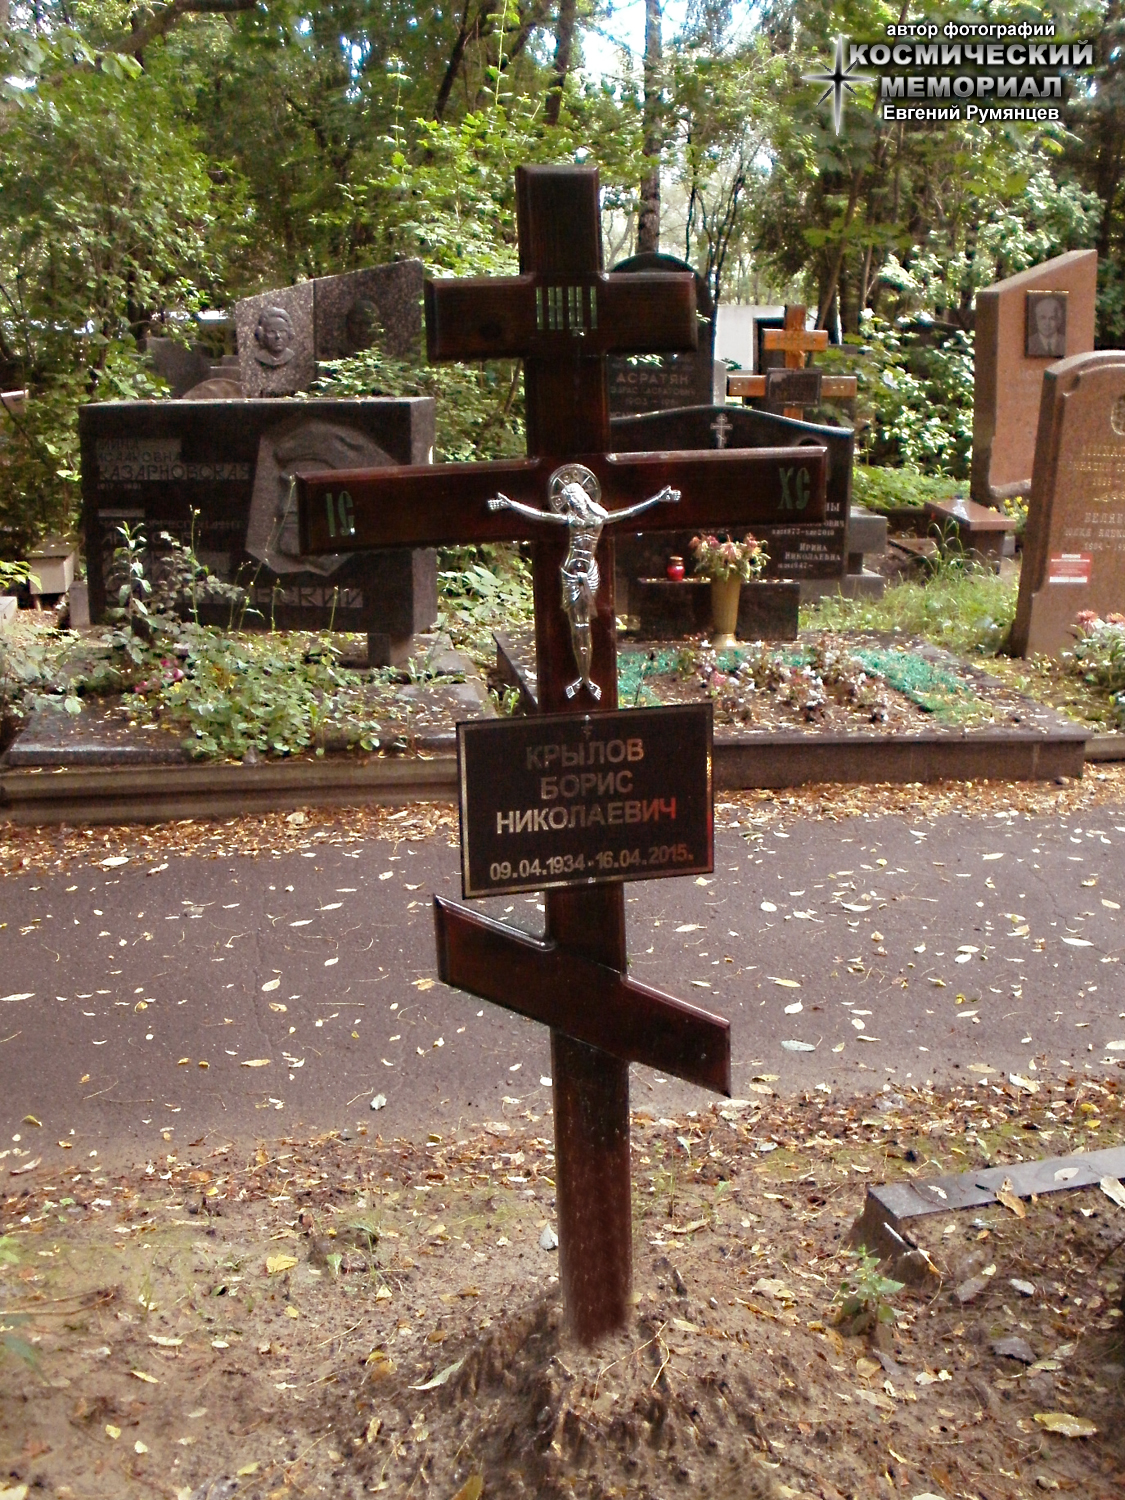 кунцевское кладбище могилы знаменитостей фото